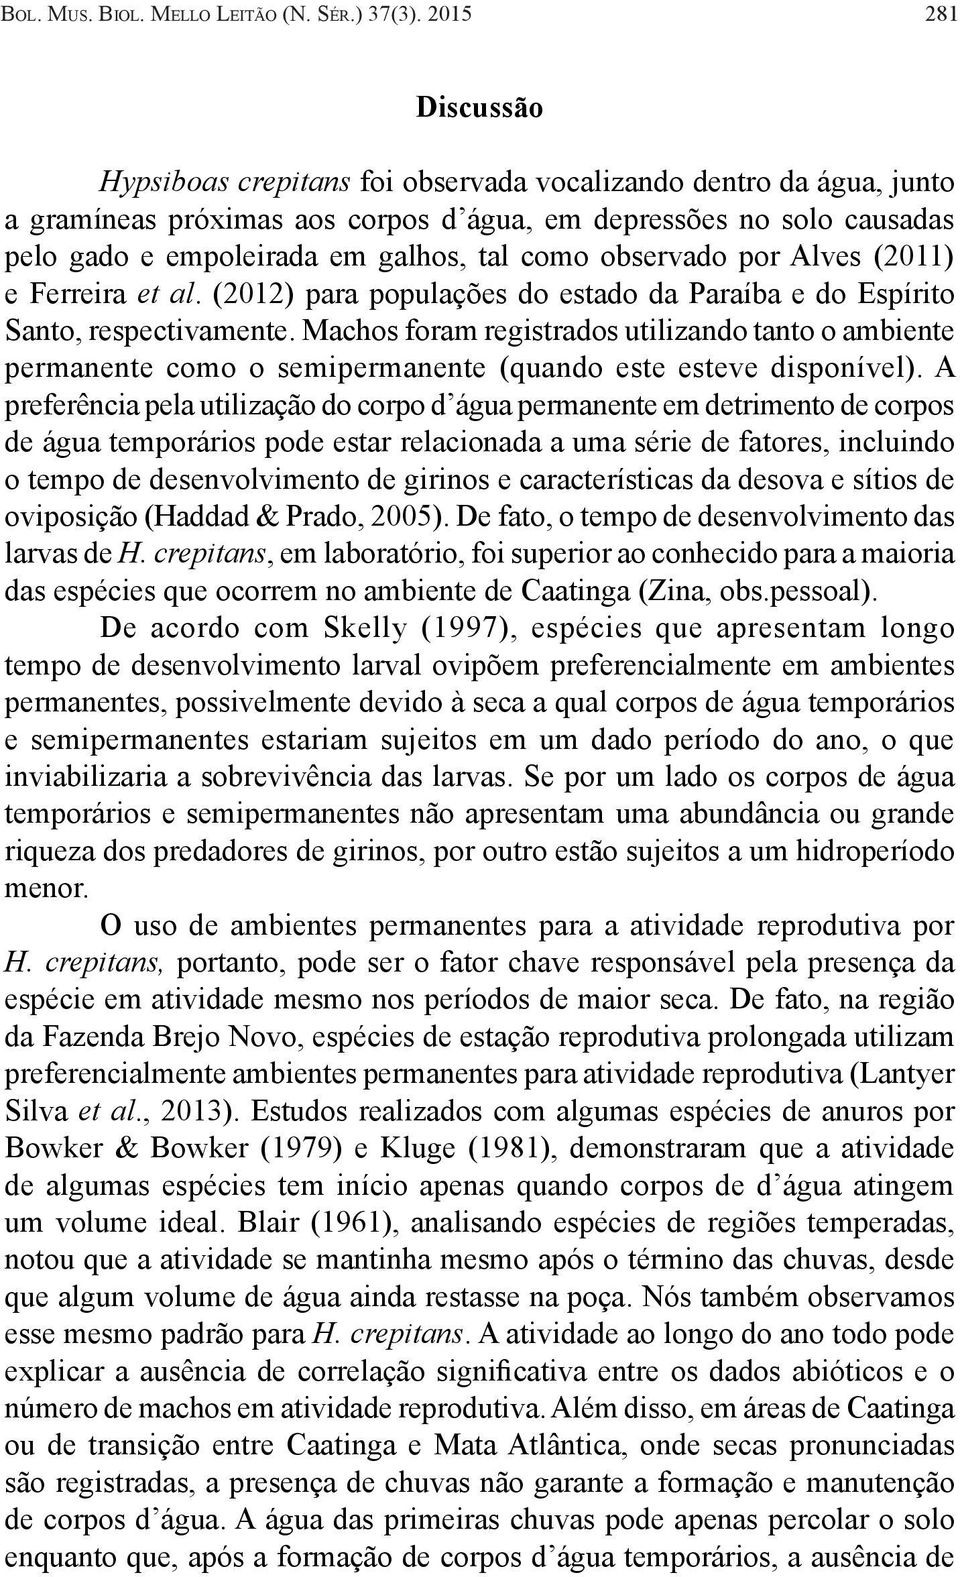 como observado por Alves (2011) e Ferreira et al. (2012) para populações do estado da Paraíba e do Espírito Santo, respectivamente.